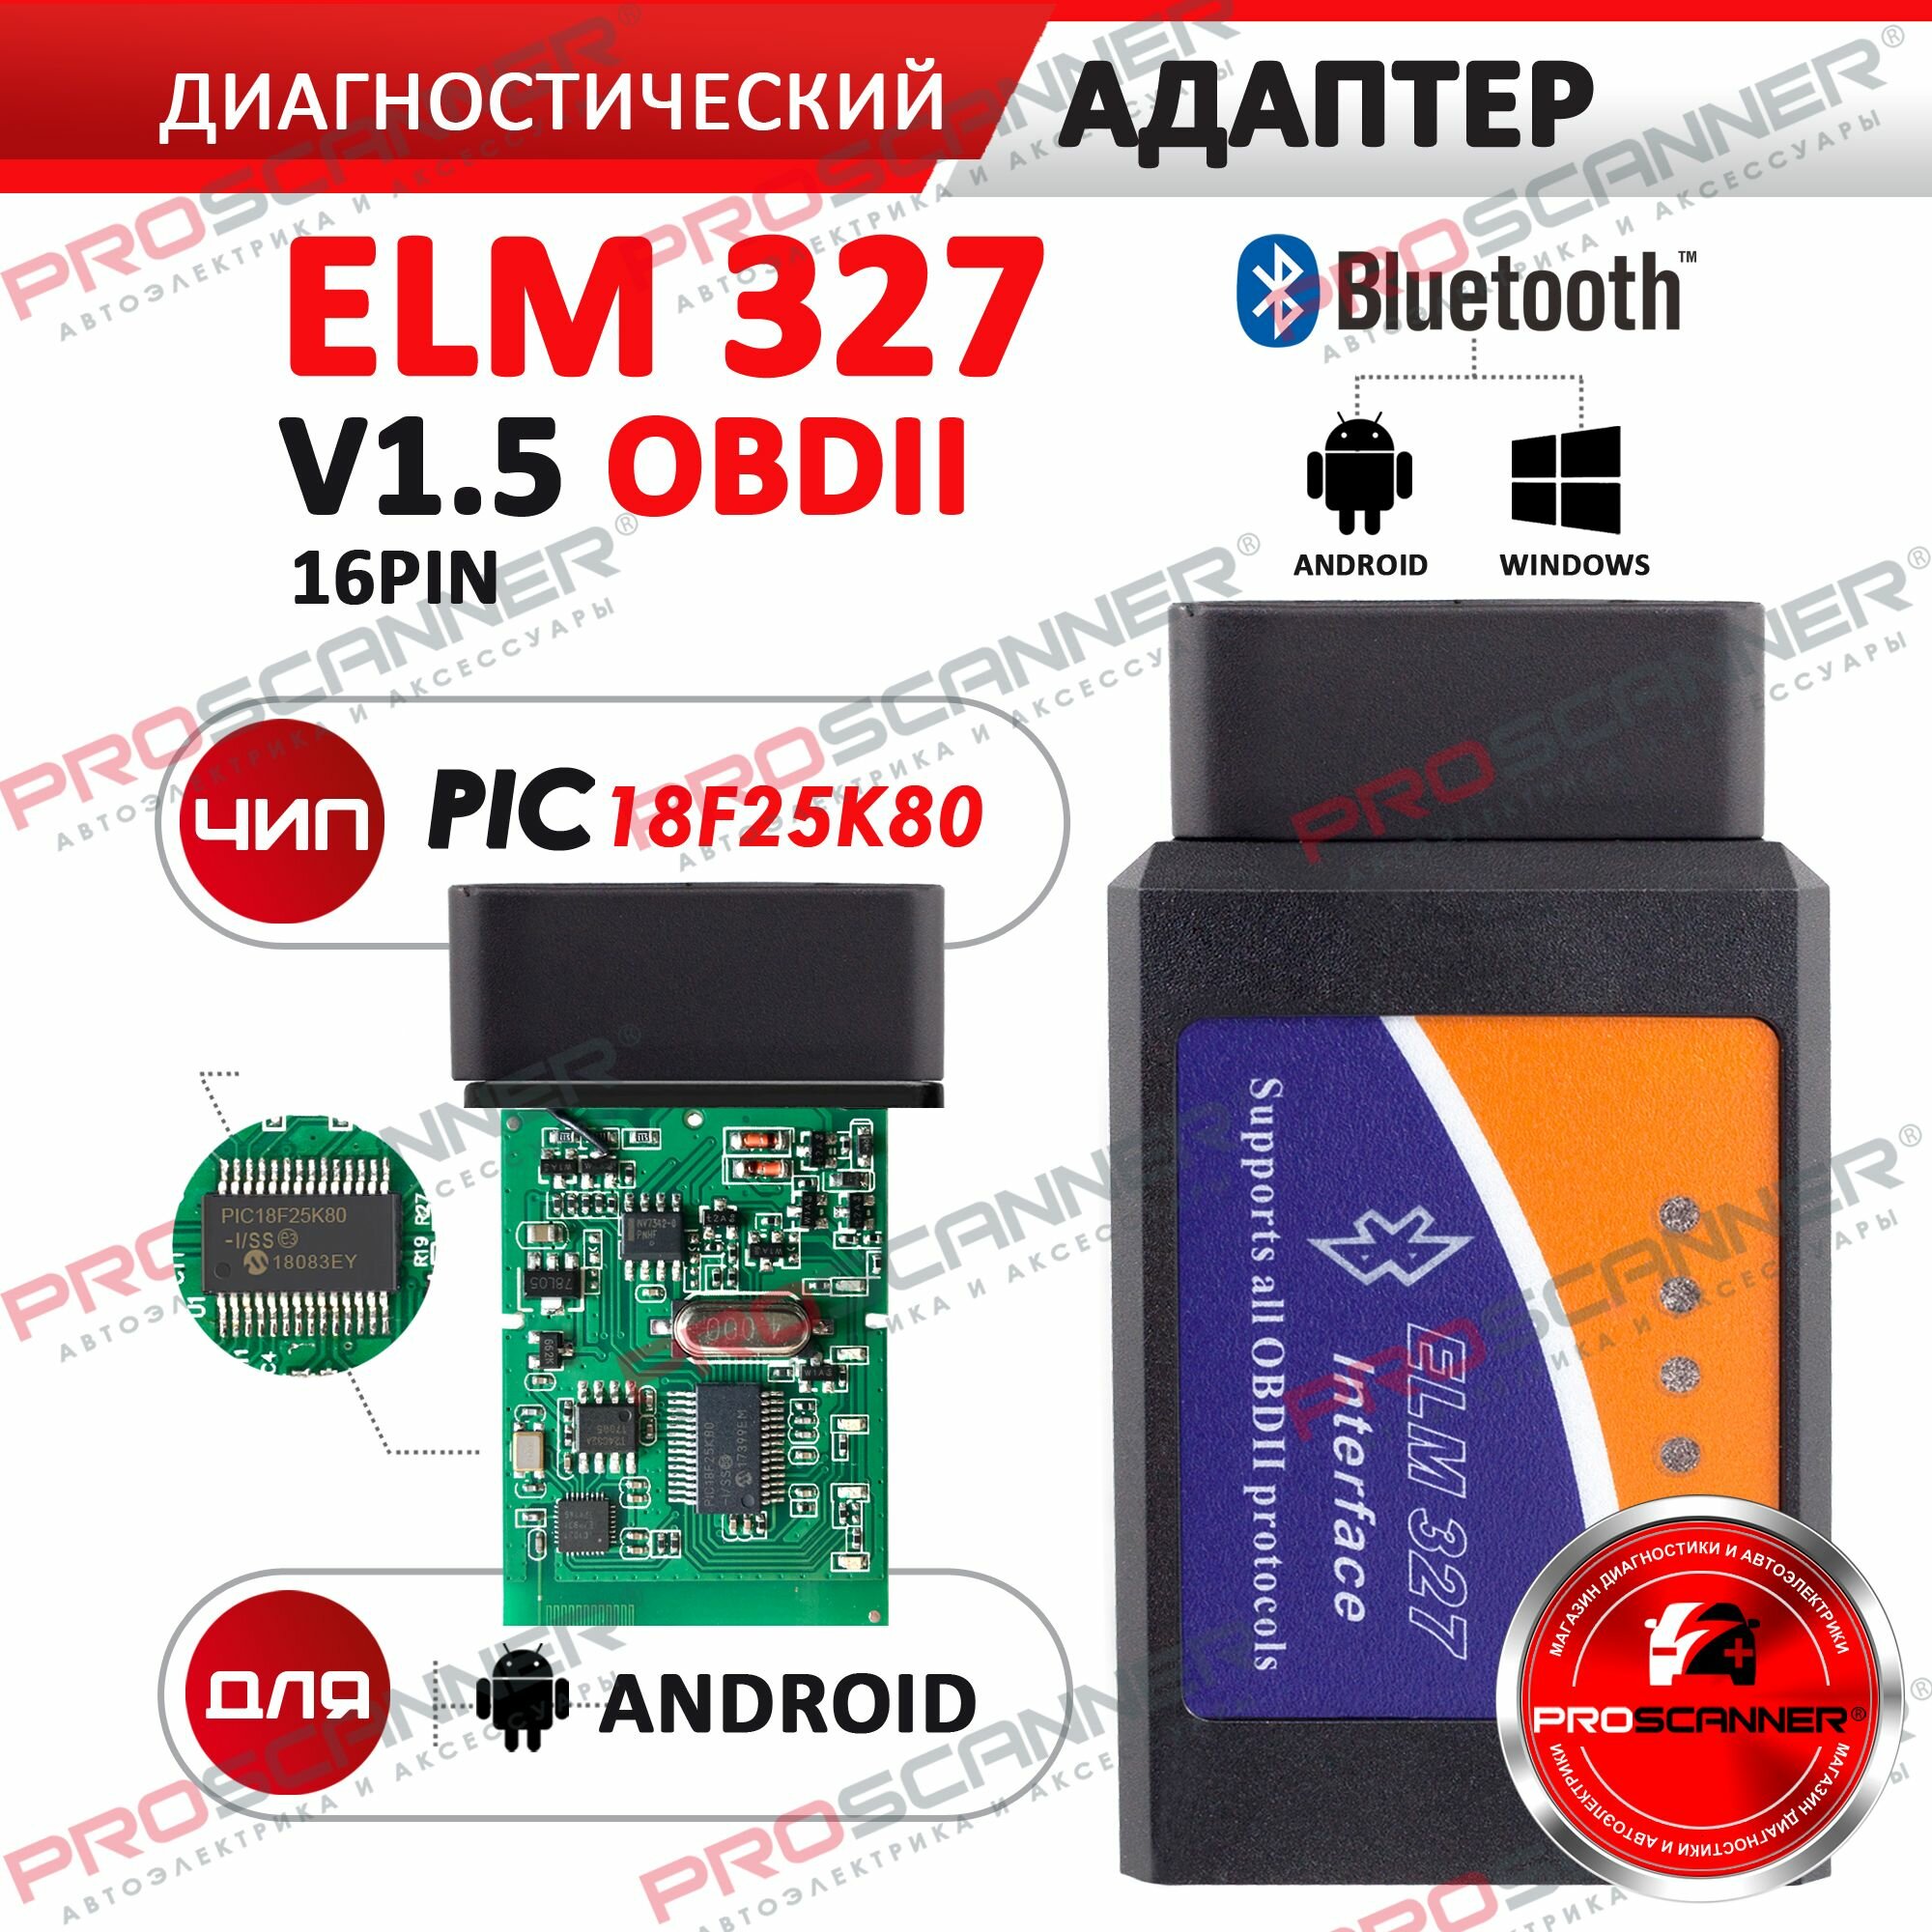 Диагностический автосканер ELM327 Bluetooth V1.5 чип PIC18F25K80 / Адаптер для диагностики автомобиля